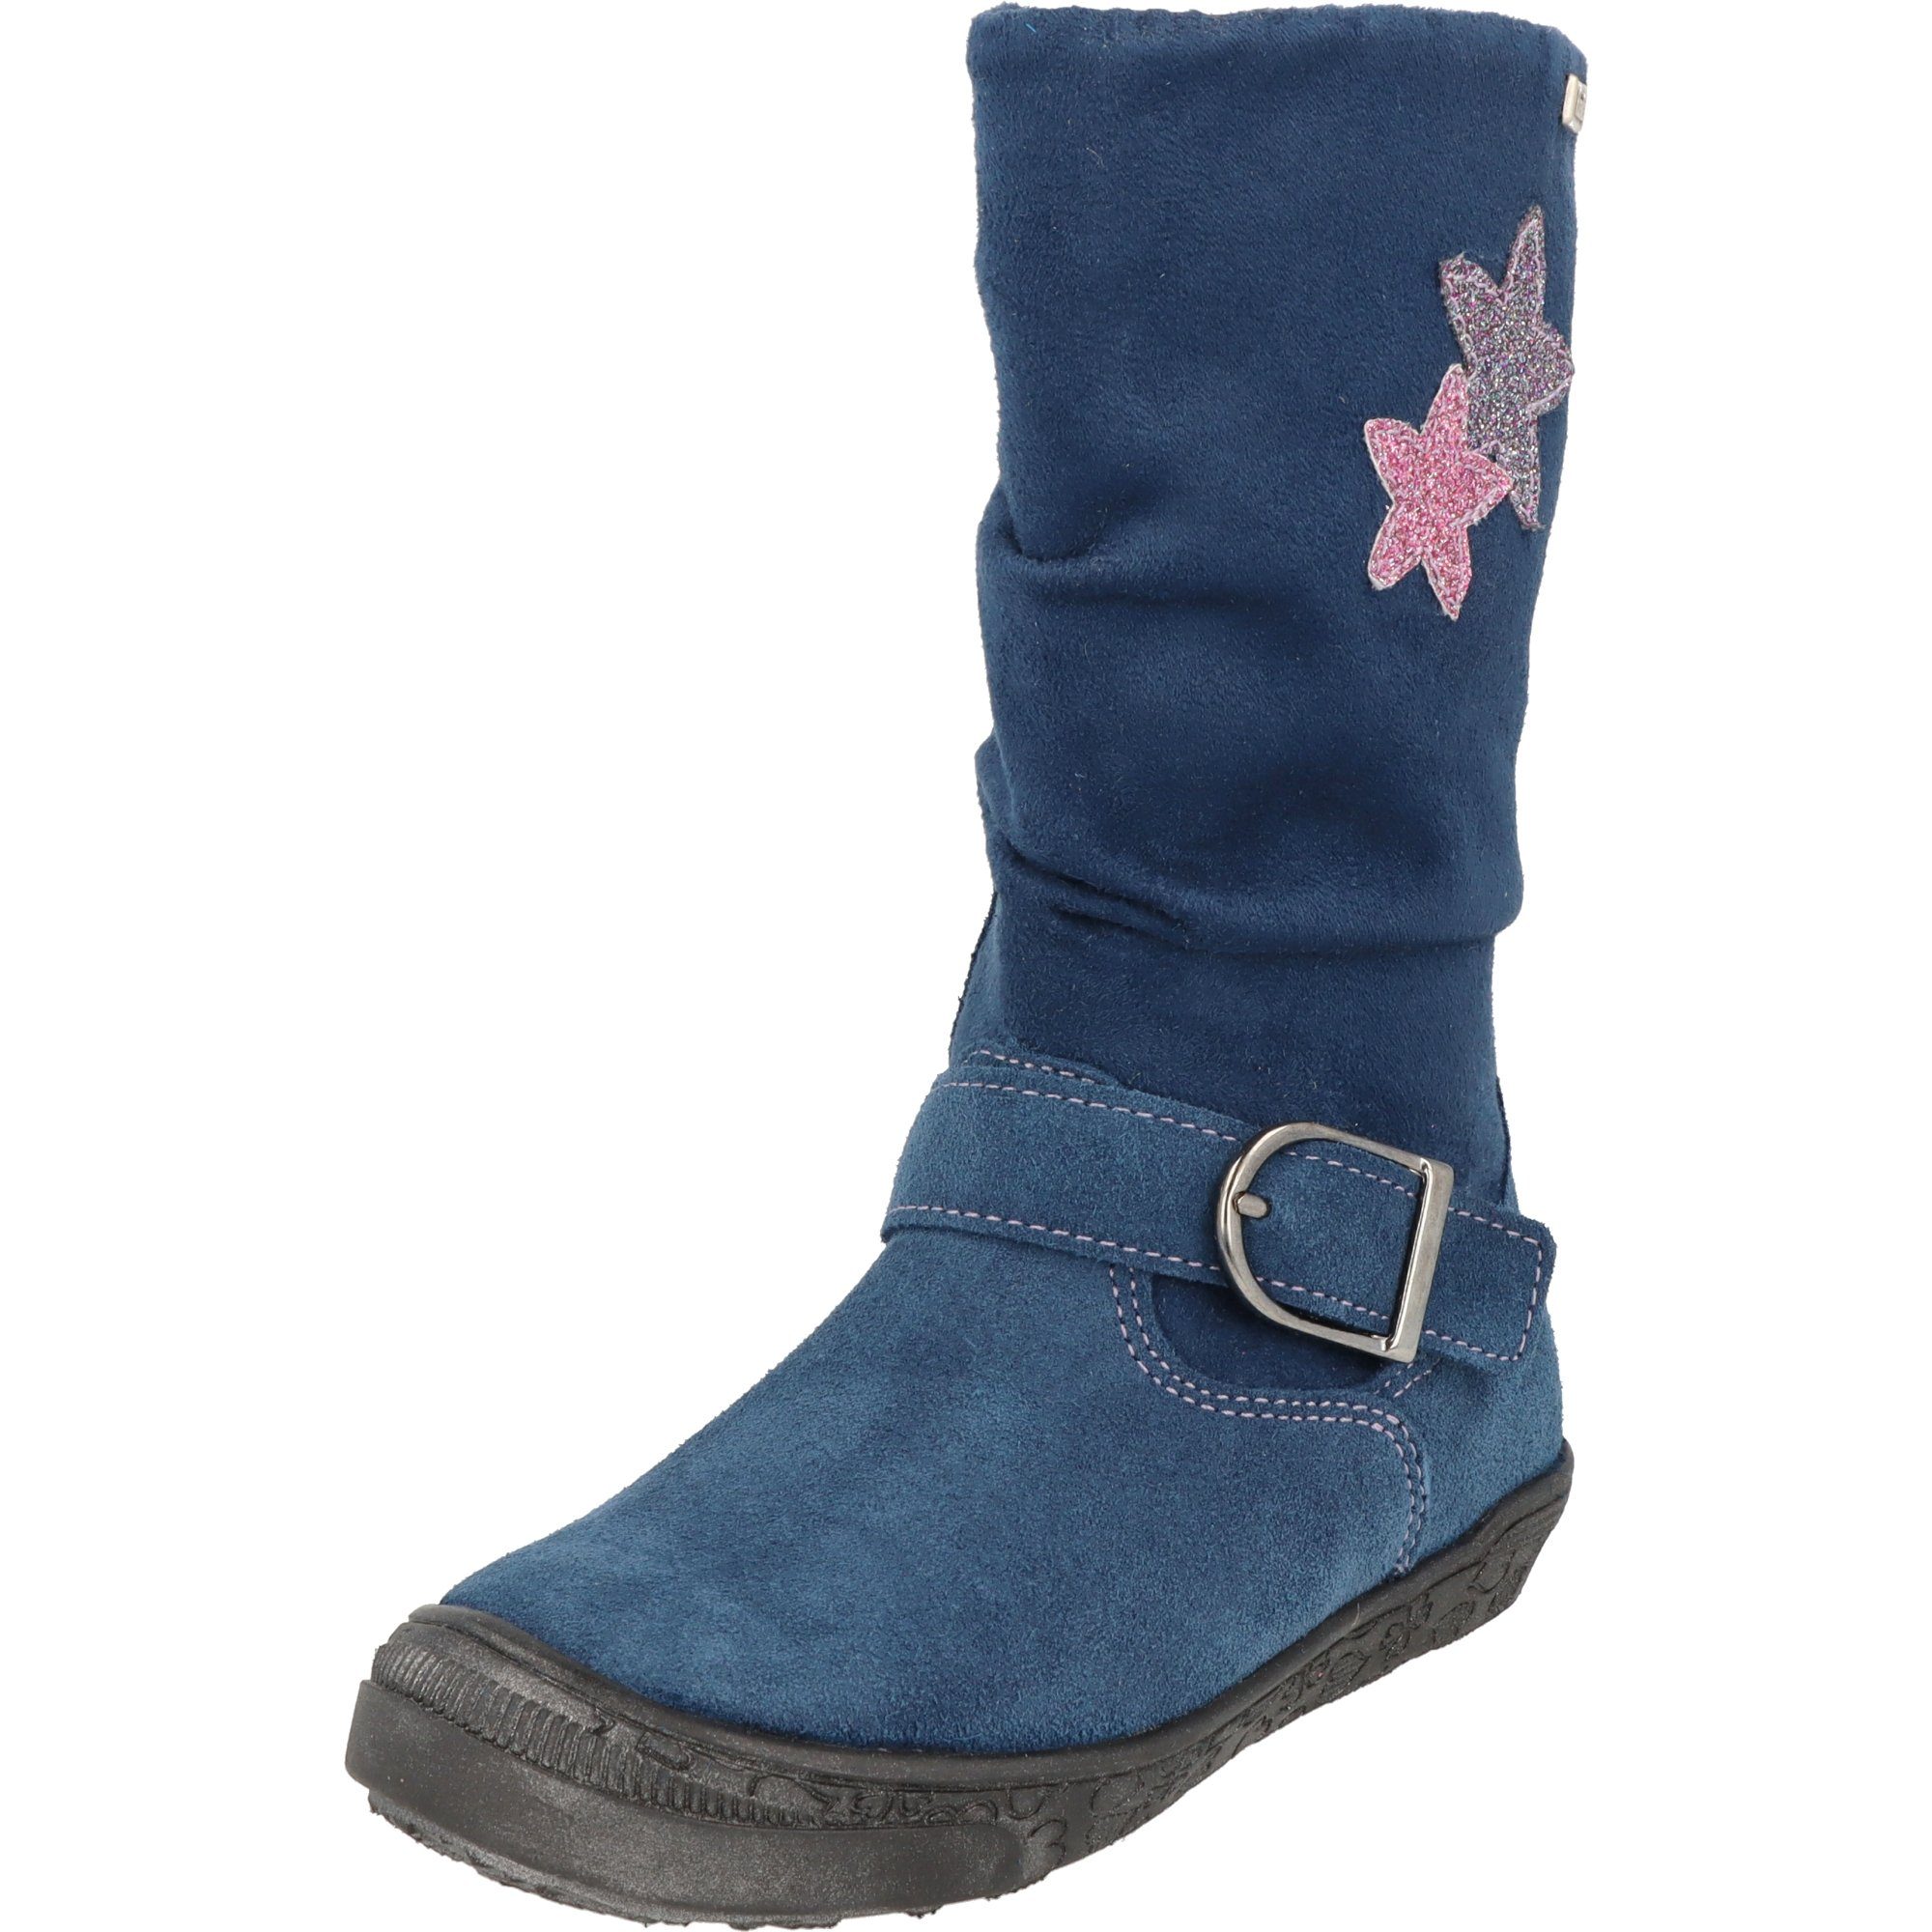 Richter Mädchen Schuhe Leder Tex 4152-456-6811 Winterstiefel Blau Stiefel gefüttert Sterne